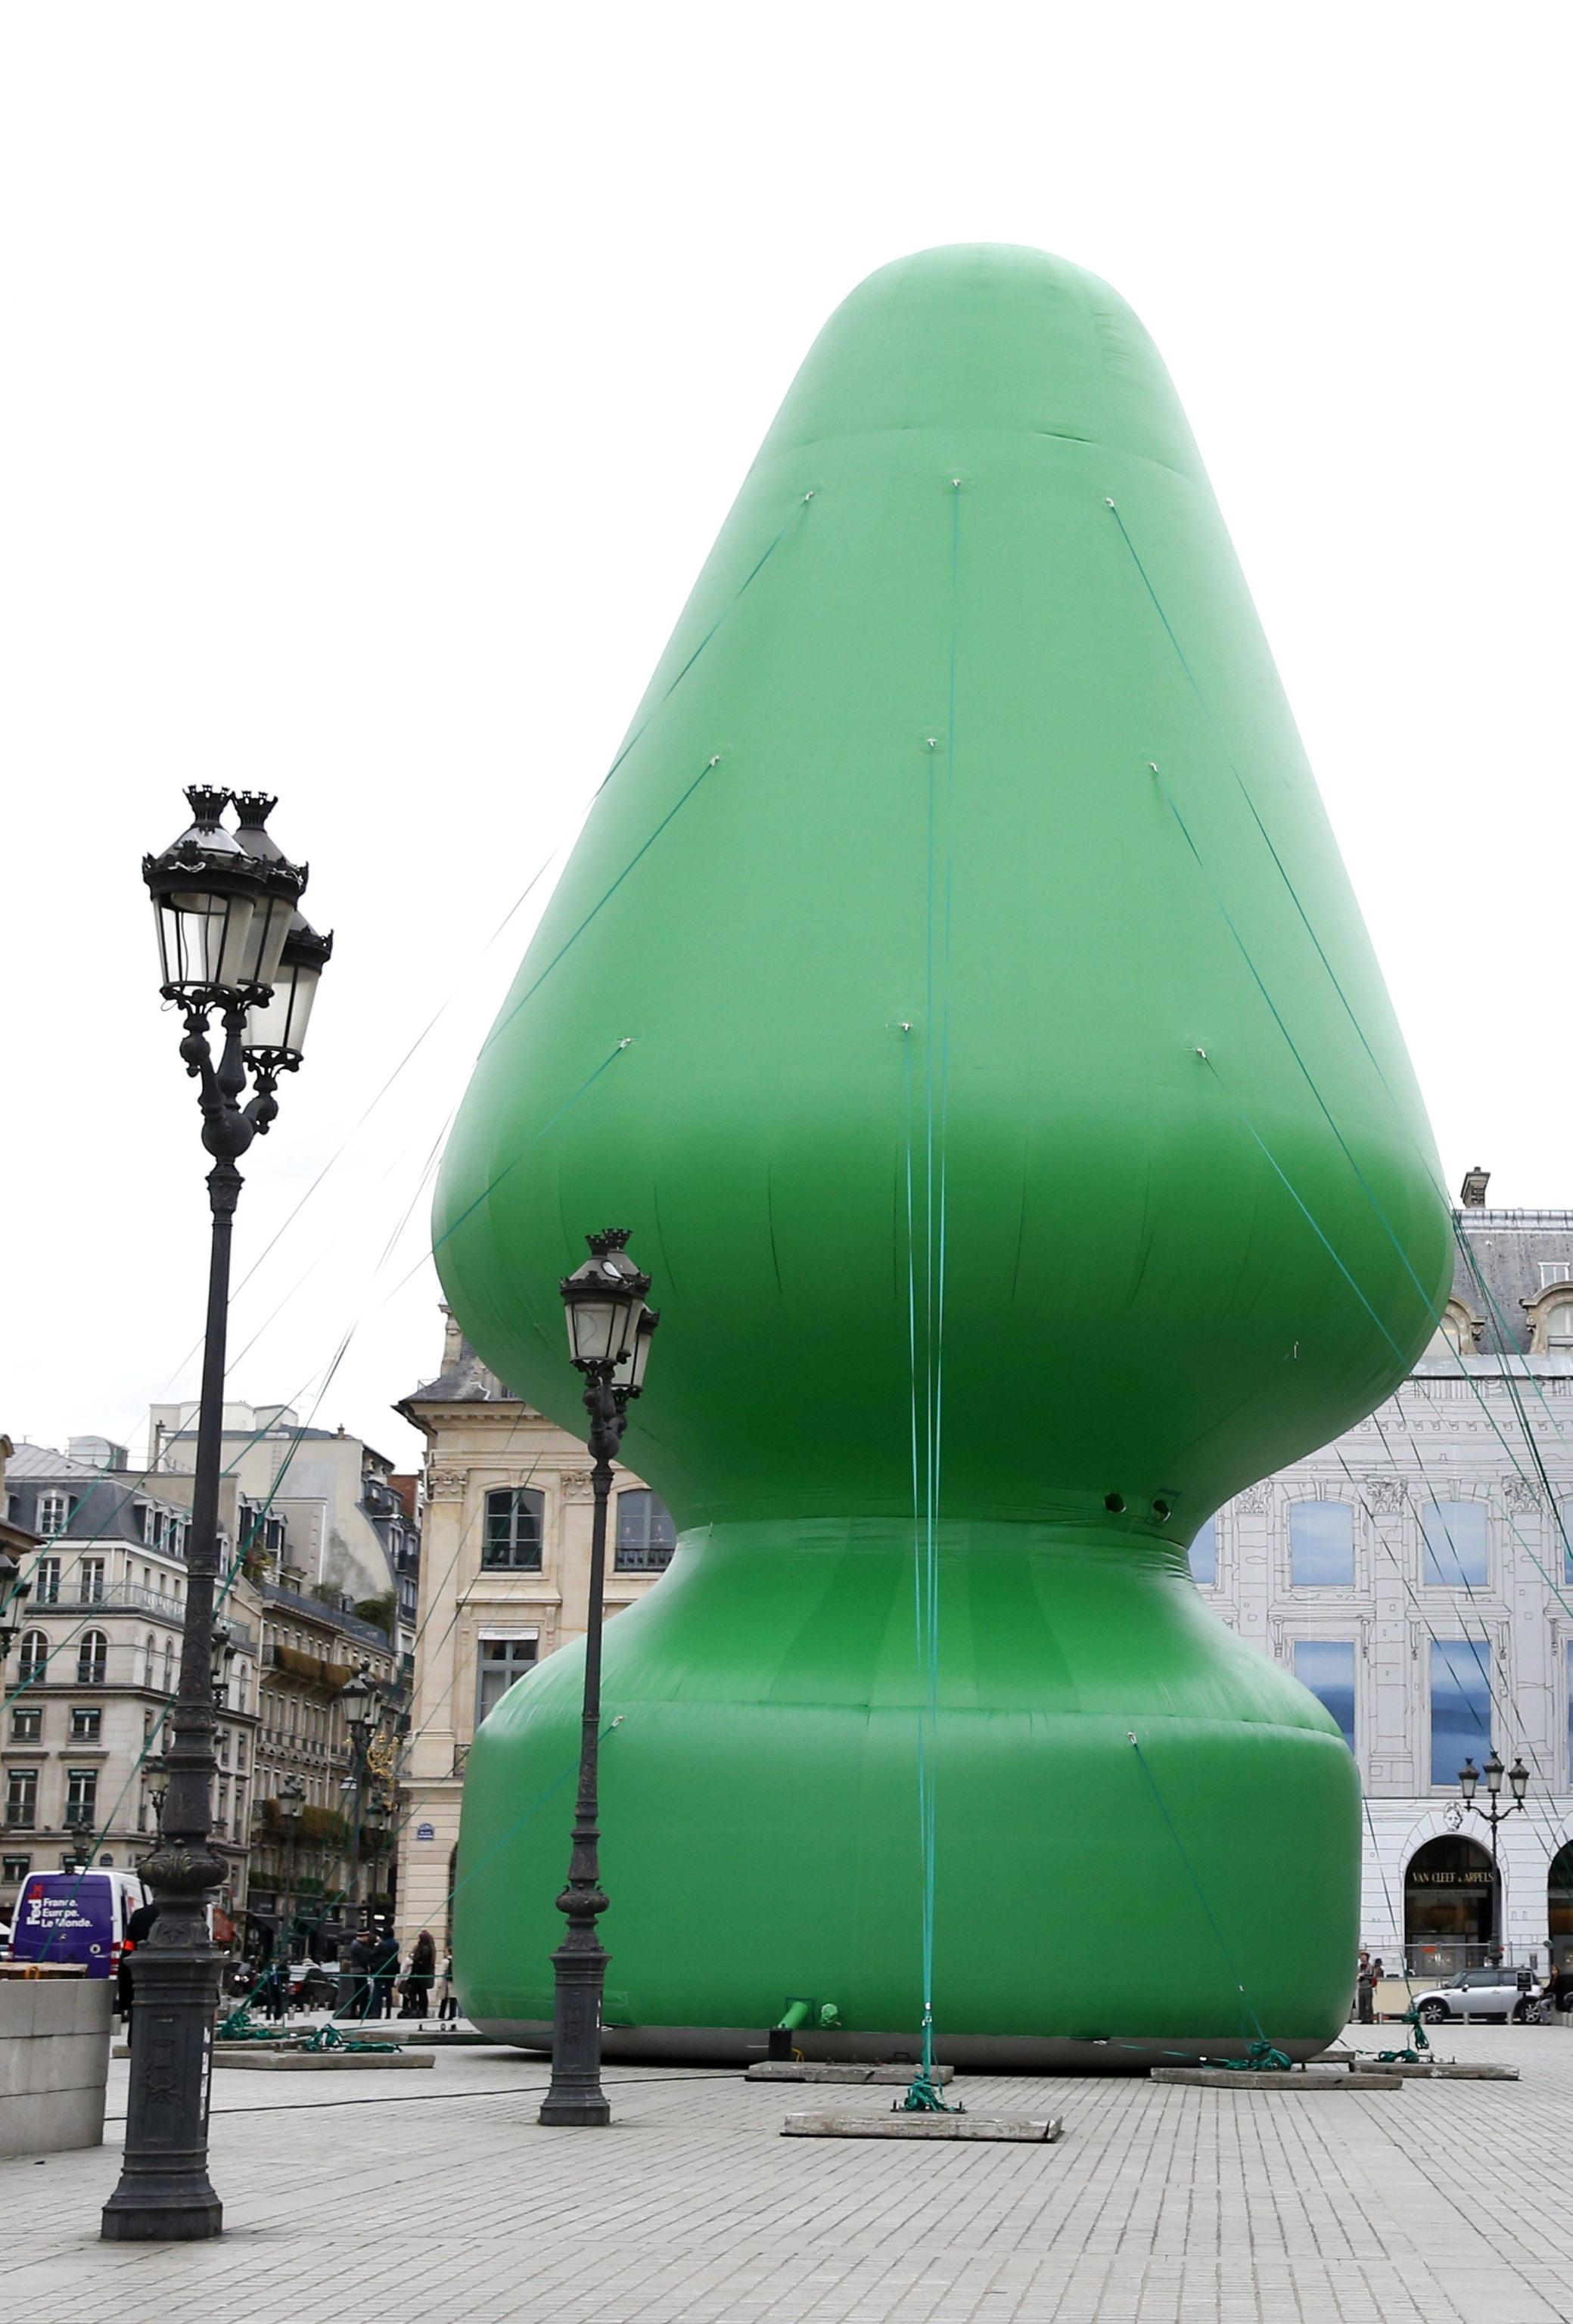 Sgonfiato Lalbero Gigante Sex Toy Di Parigi Foto Photogallery Free Download Nude Photo Gallery 